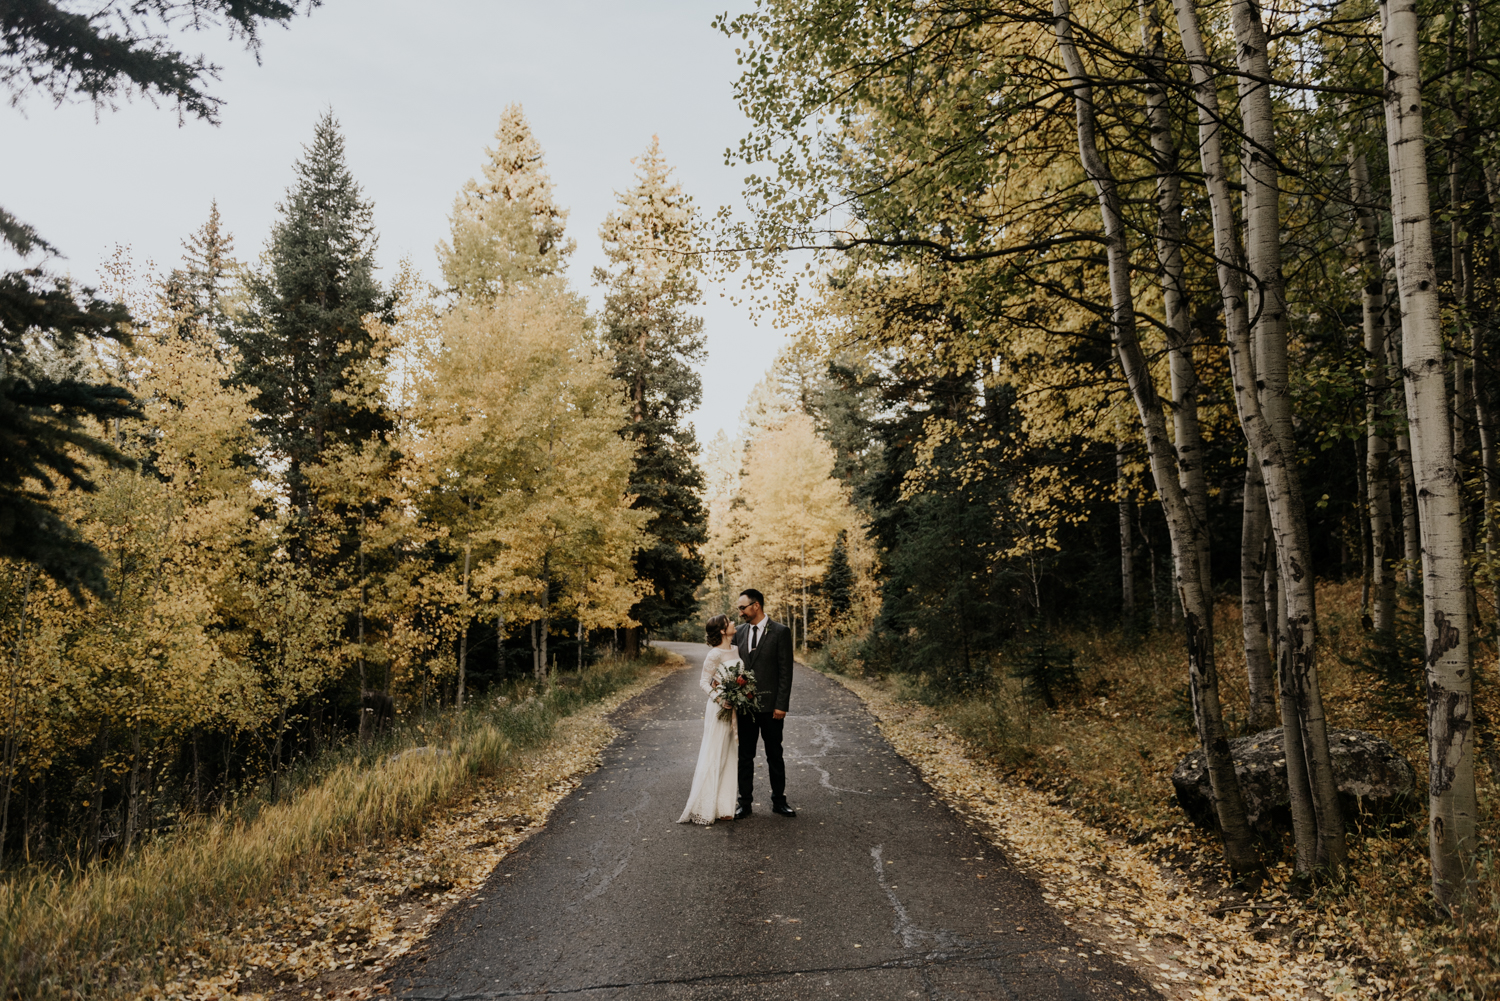 Intimate Mountain Wedding Bride and Groom Photos in Meadow Creek, Pine Colorado